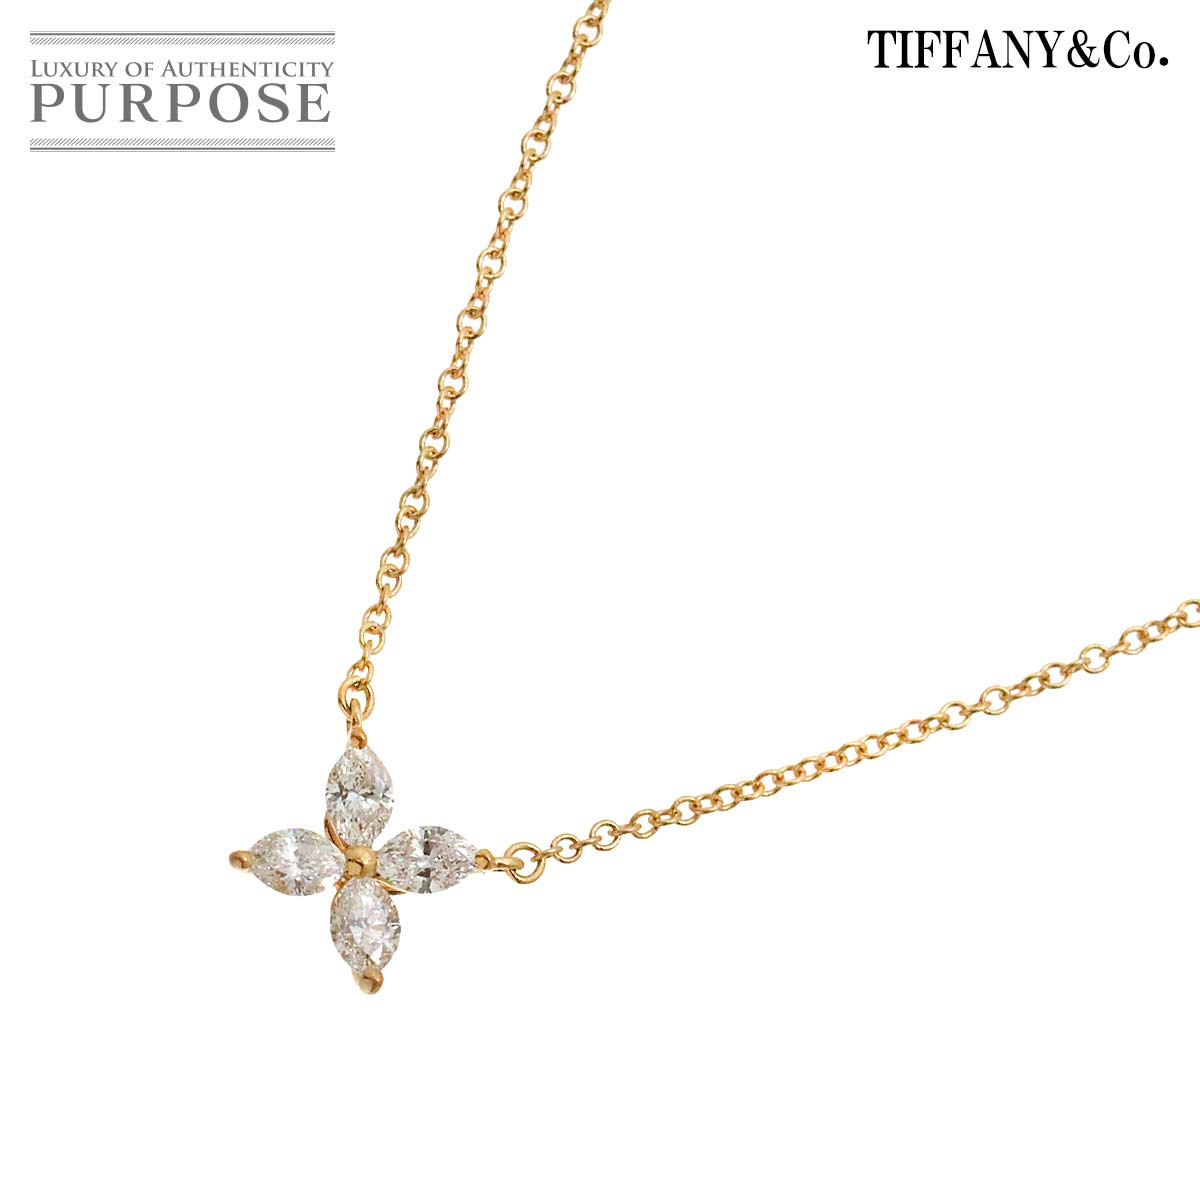 【新品同様】 ティファニー TIFFANY&Co. ビクトリア スモール ダイヤ ネックレス 40cm K18 PG ピンクゴールド 750 Diamond Necklace【中古】